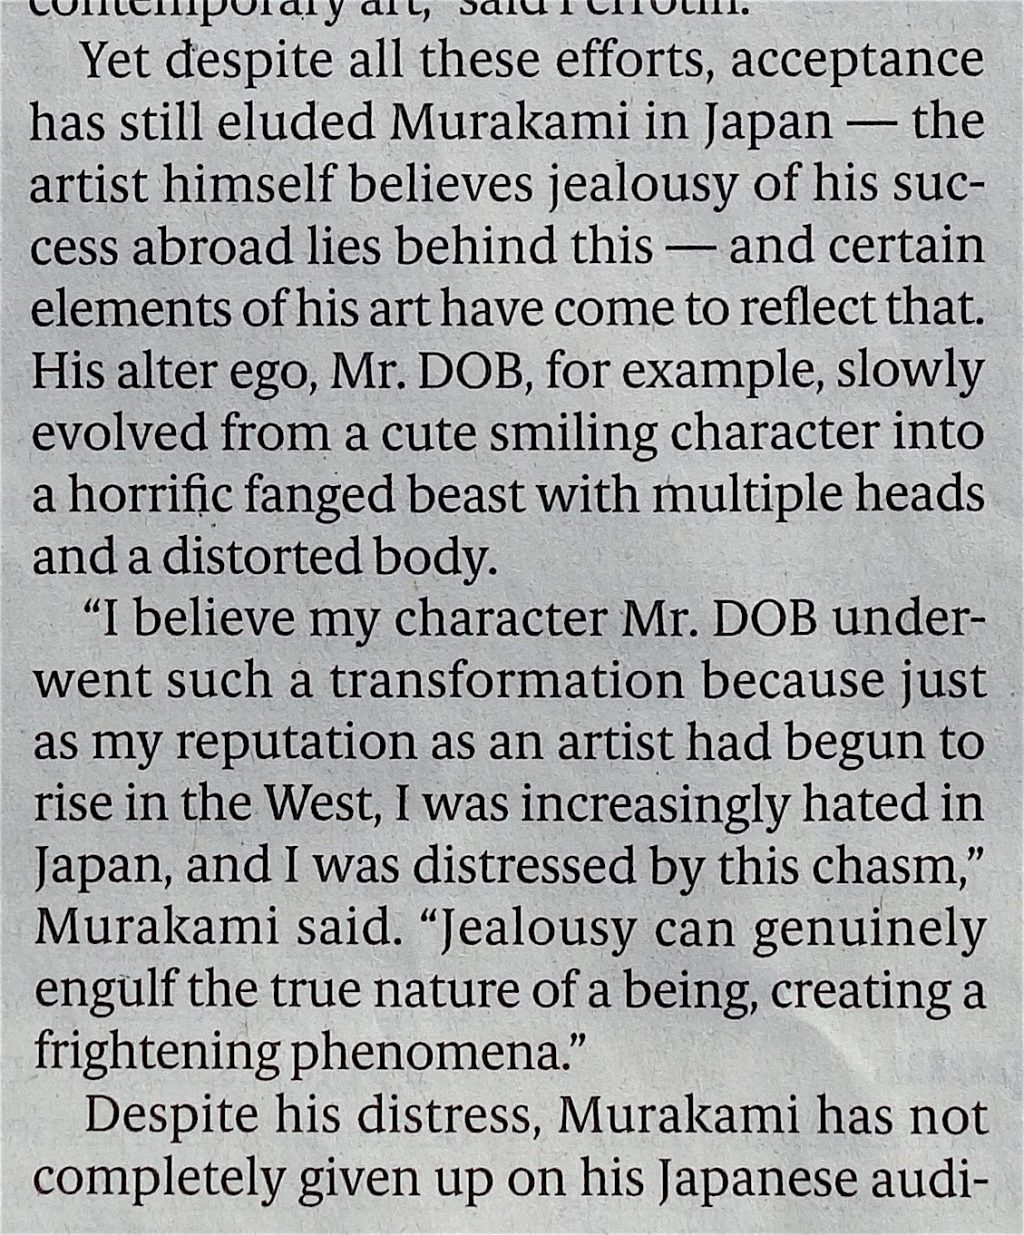 村上隆 MURAKAMI Takashi Japan Times 2019年3月14年, page 3, quote